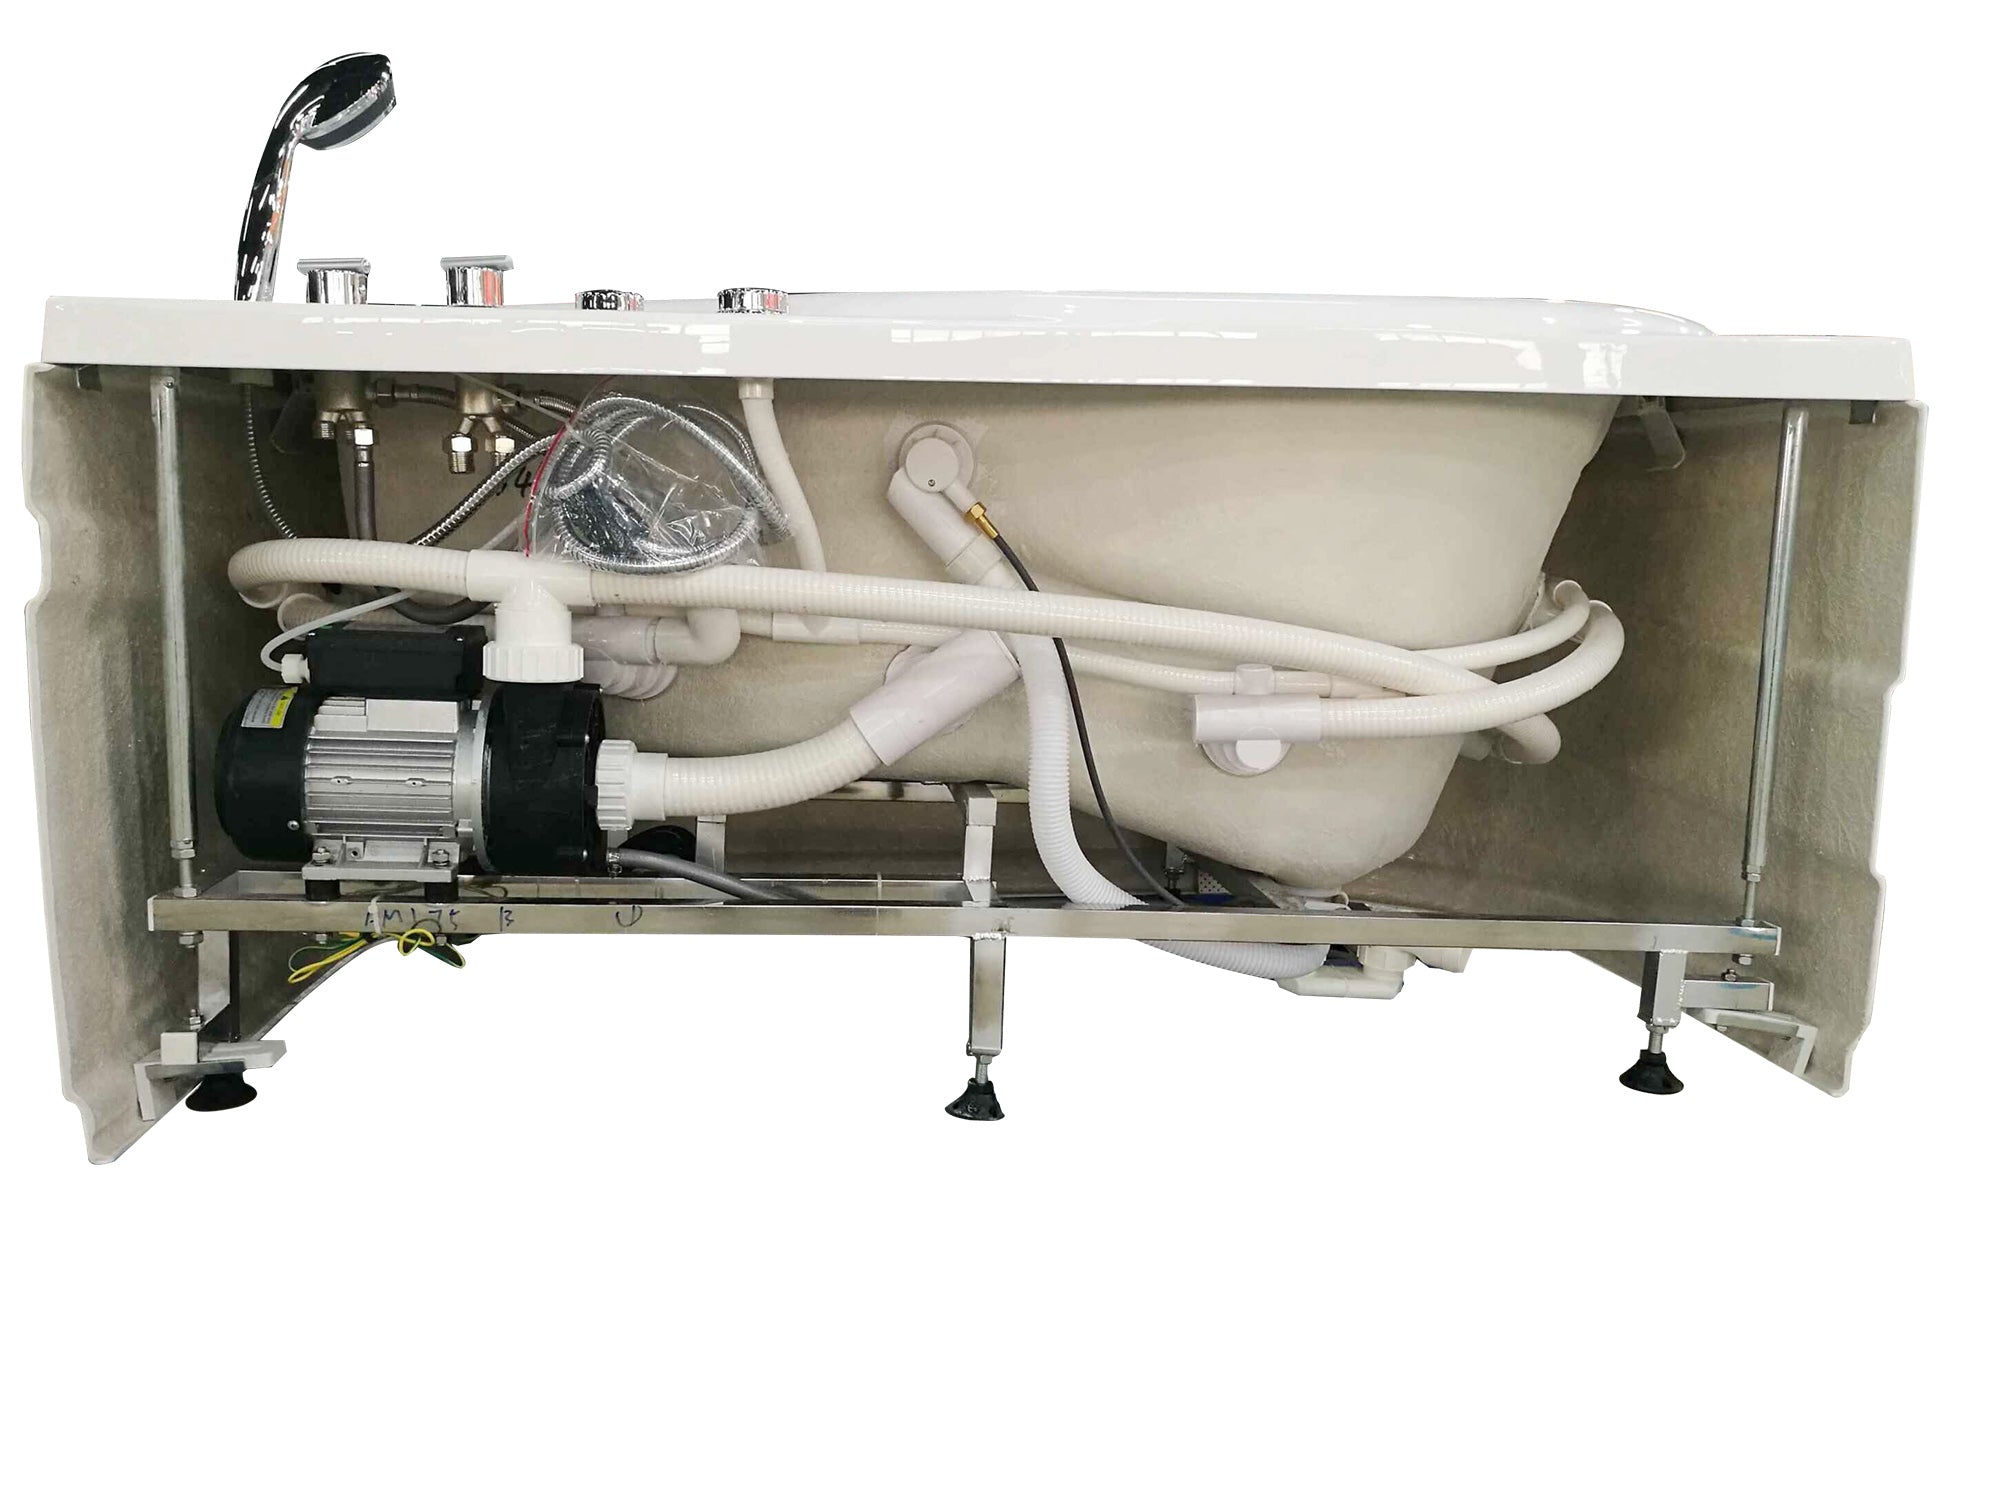 EAGO - 5' White Acrylic Corner Whirlpool Bathtub - Drain on Right | AM175-R